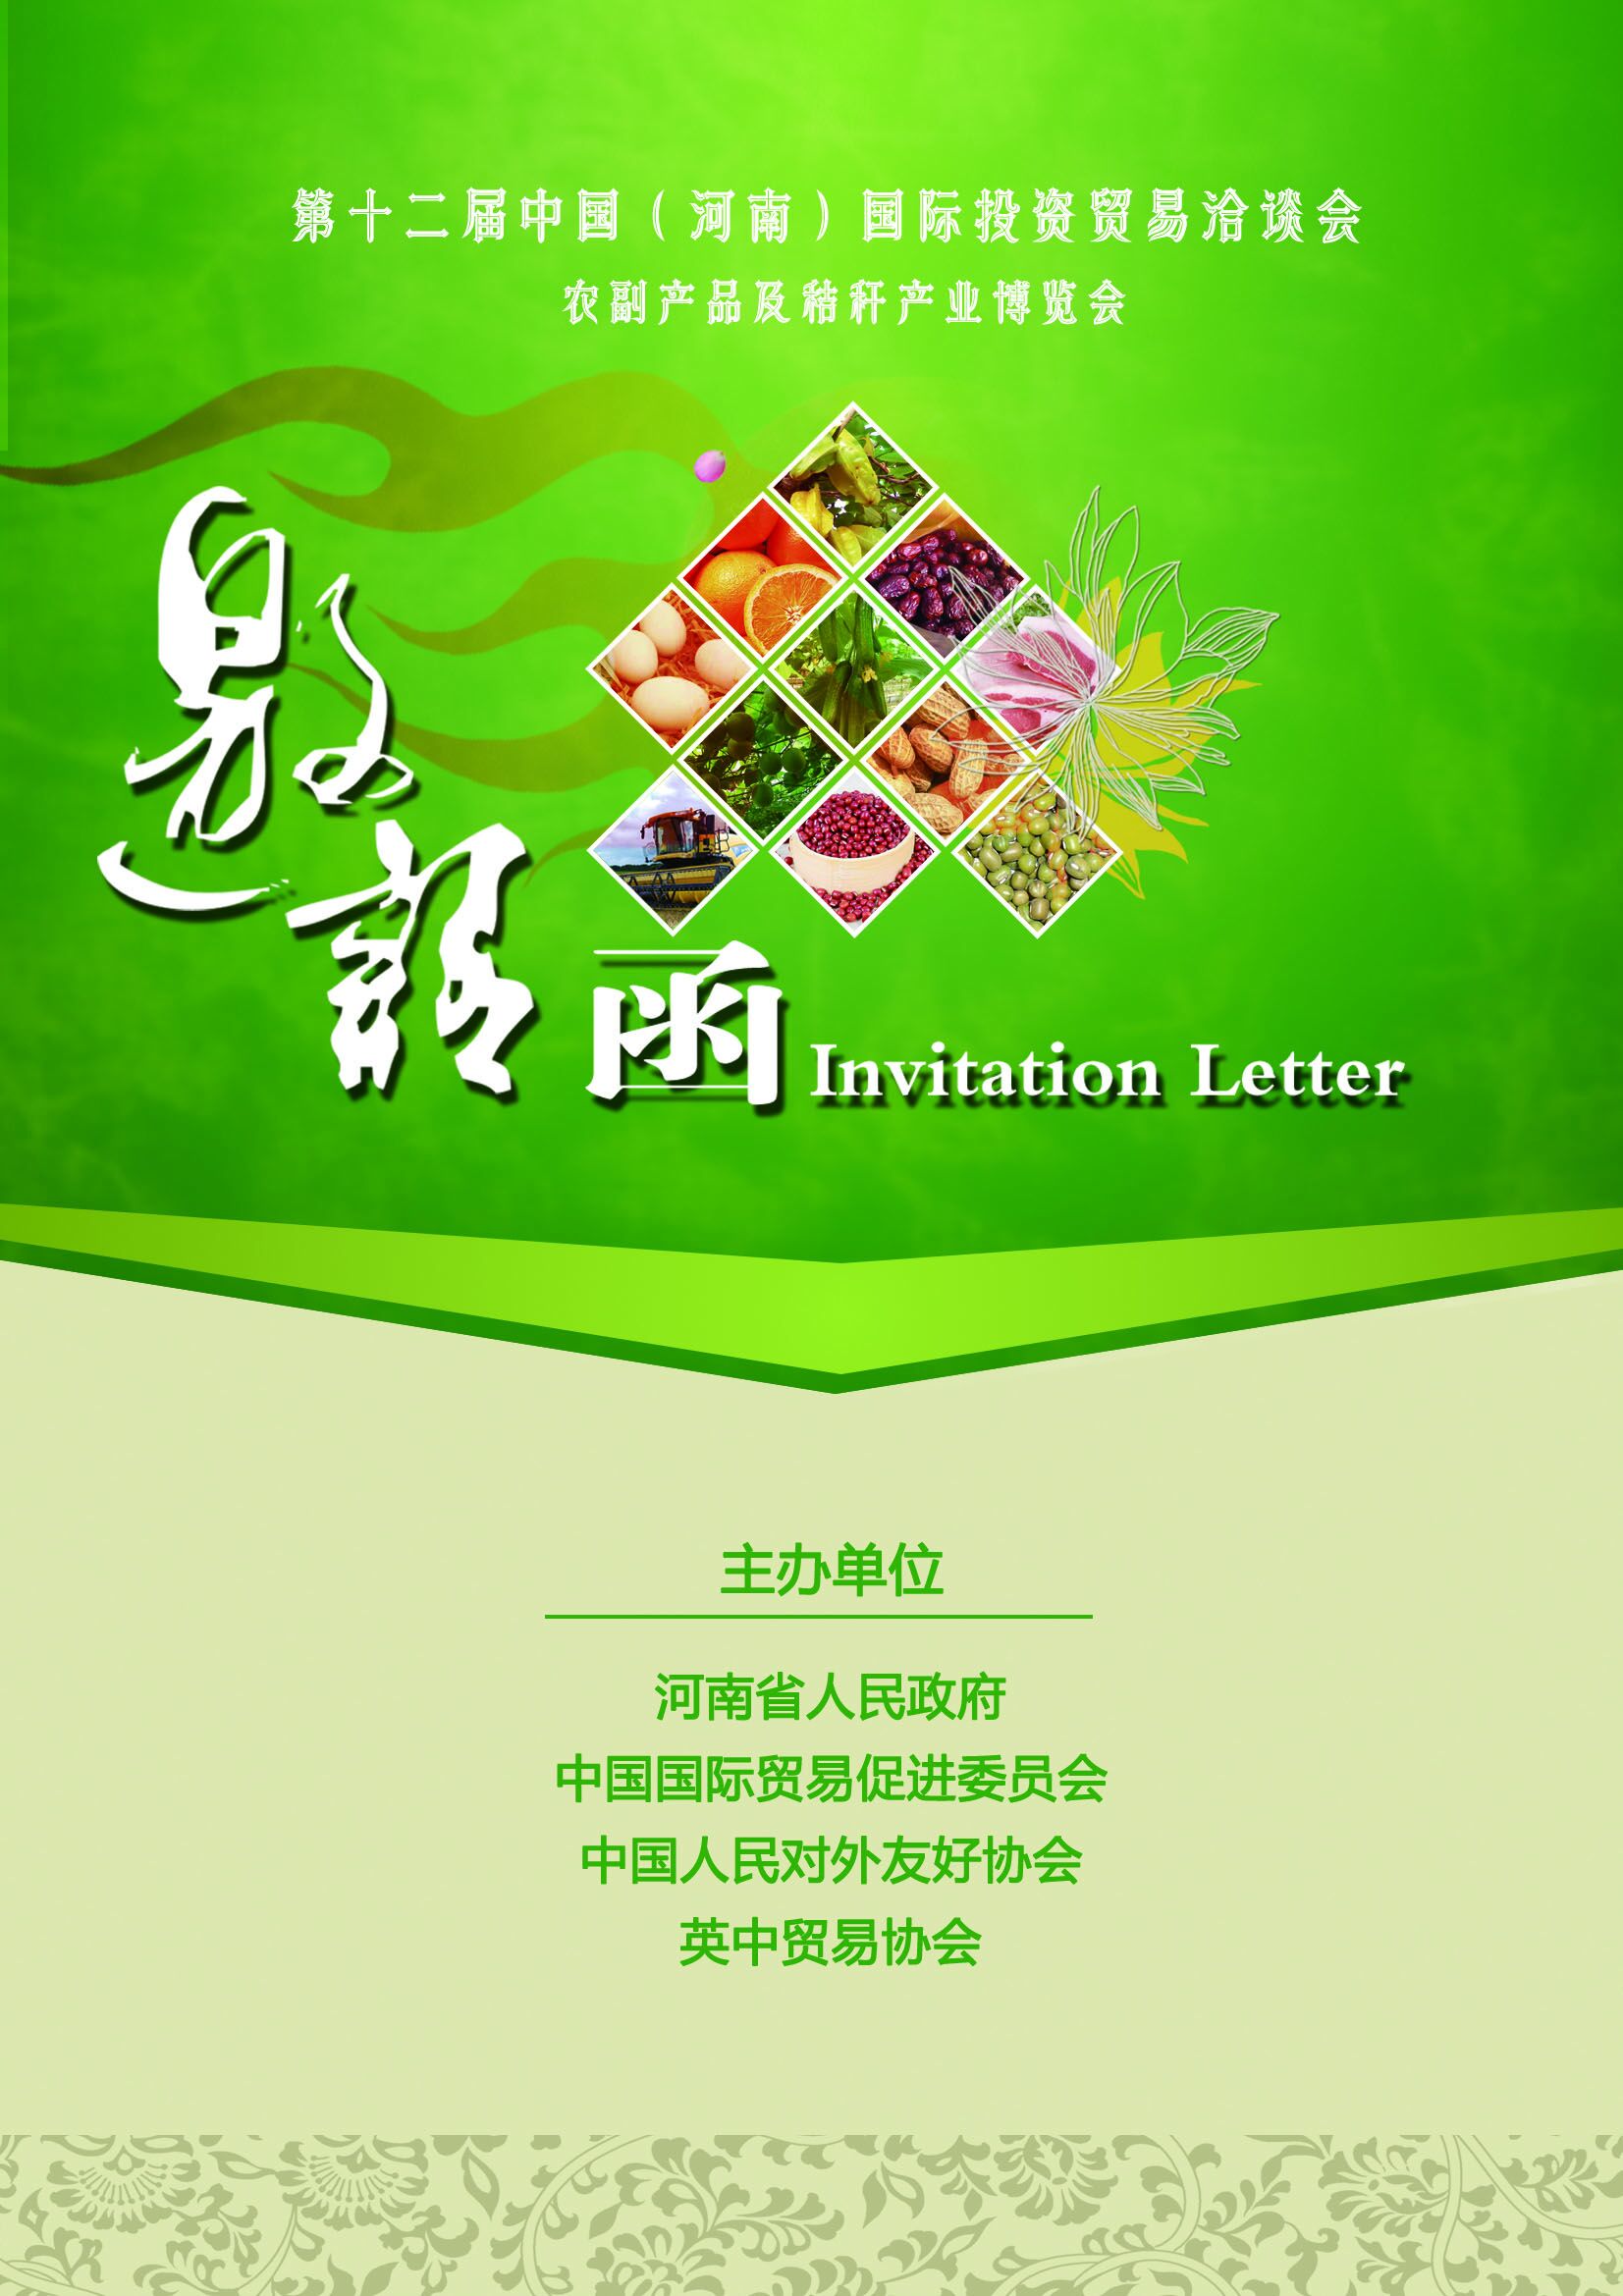 2021*31届广州国际大健康产业博览会